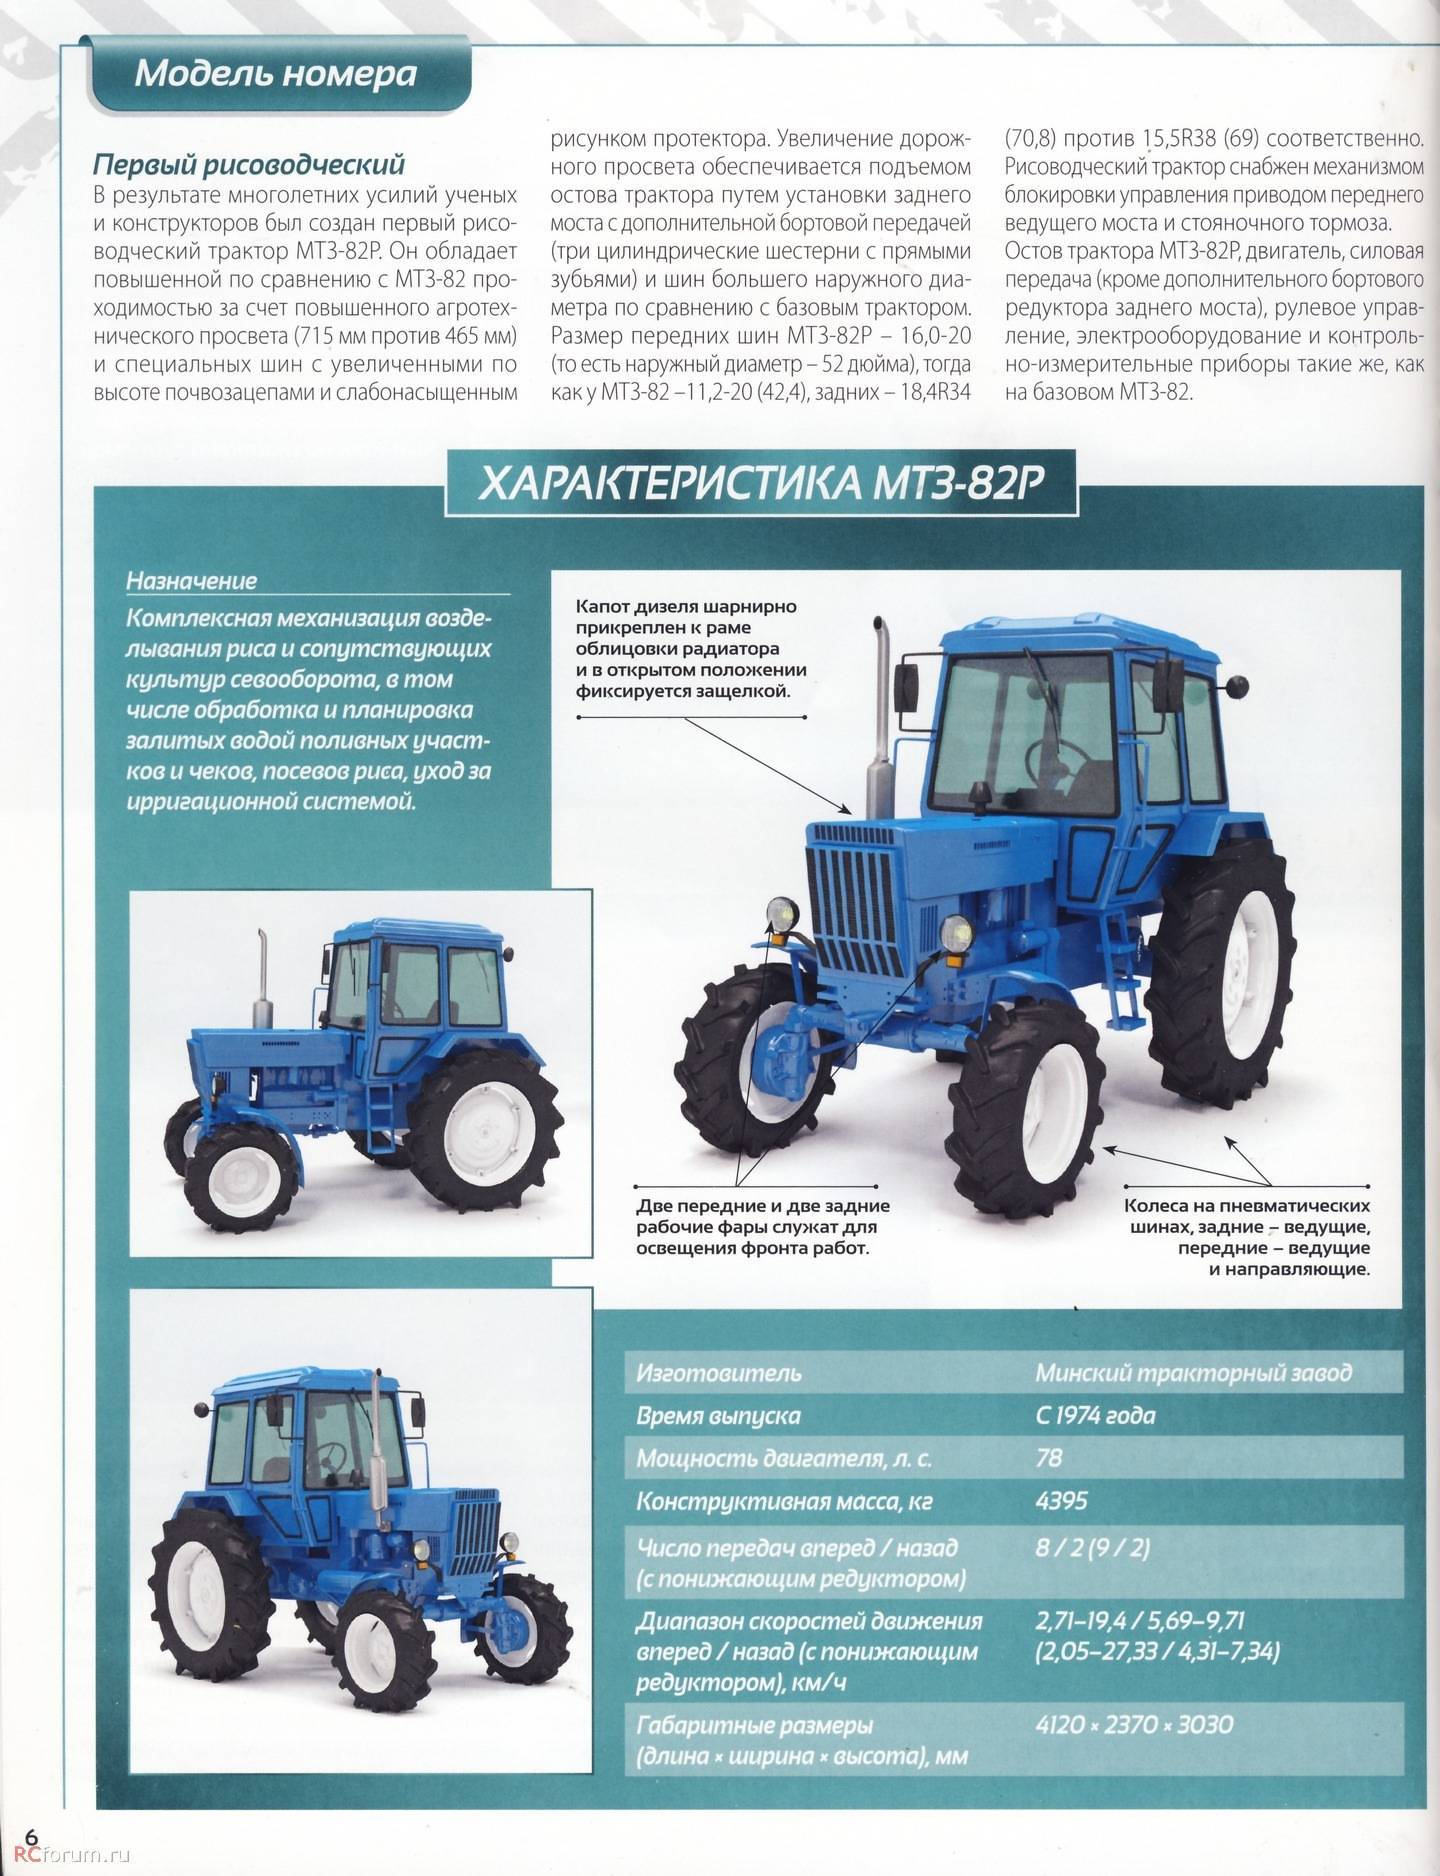 Трактор мтз-52 беларус: обзор технических характеристик